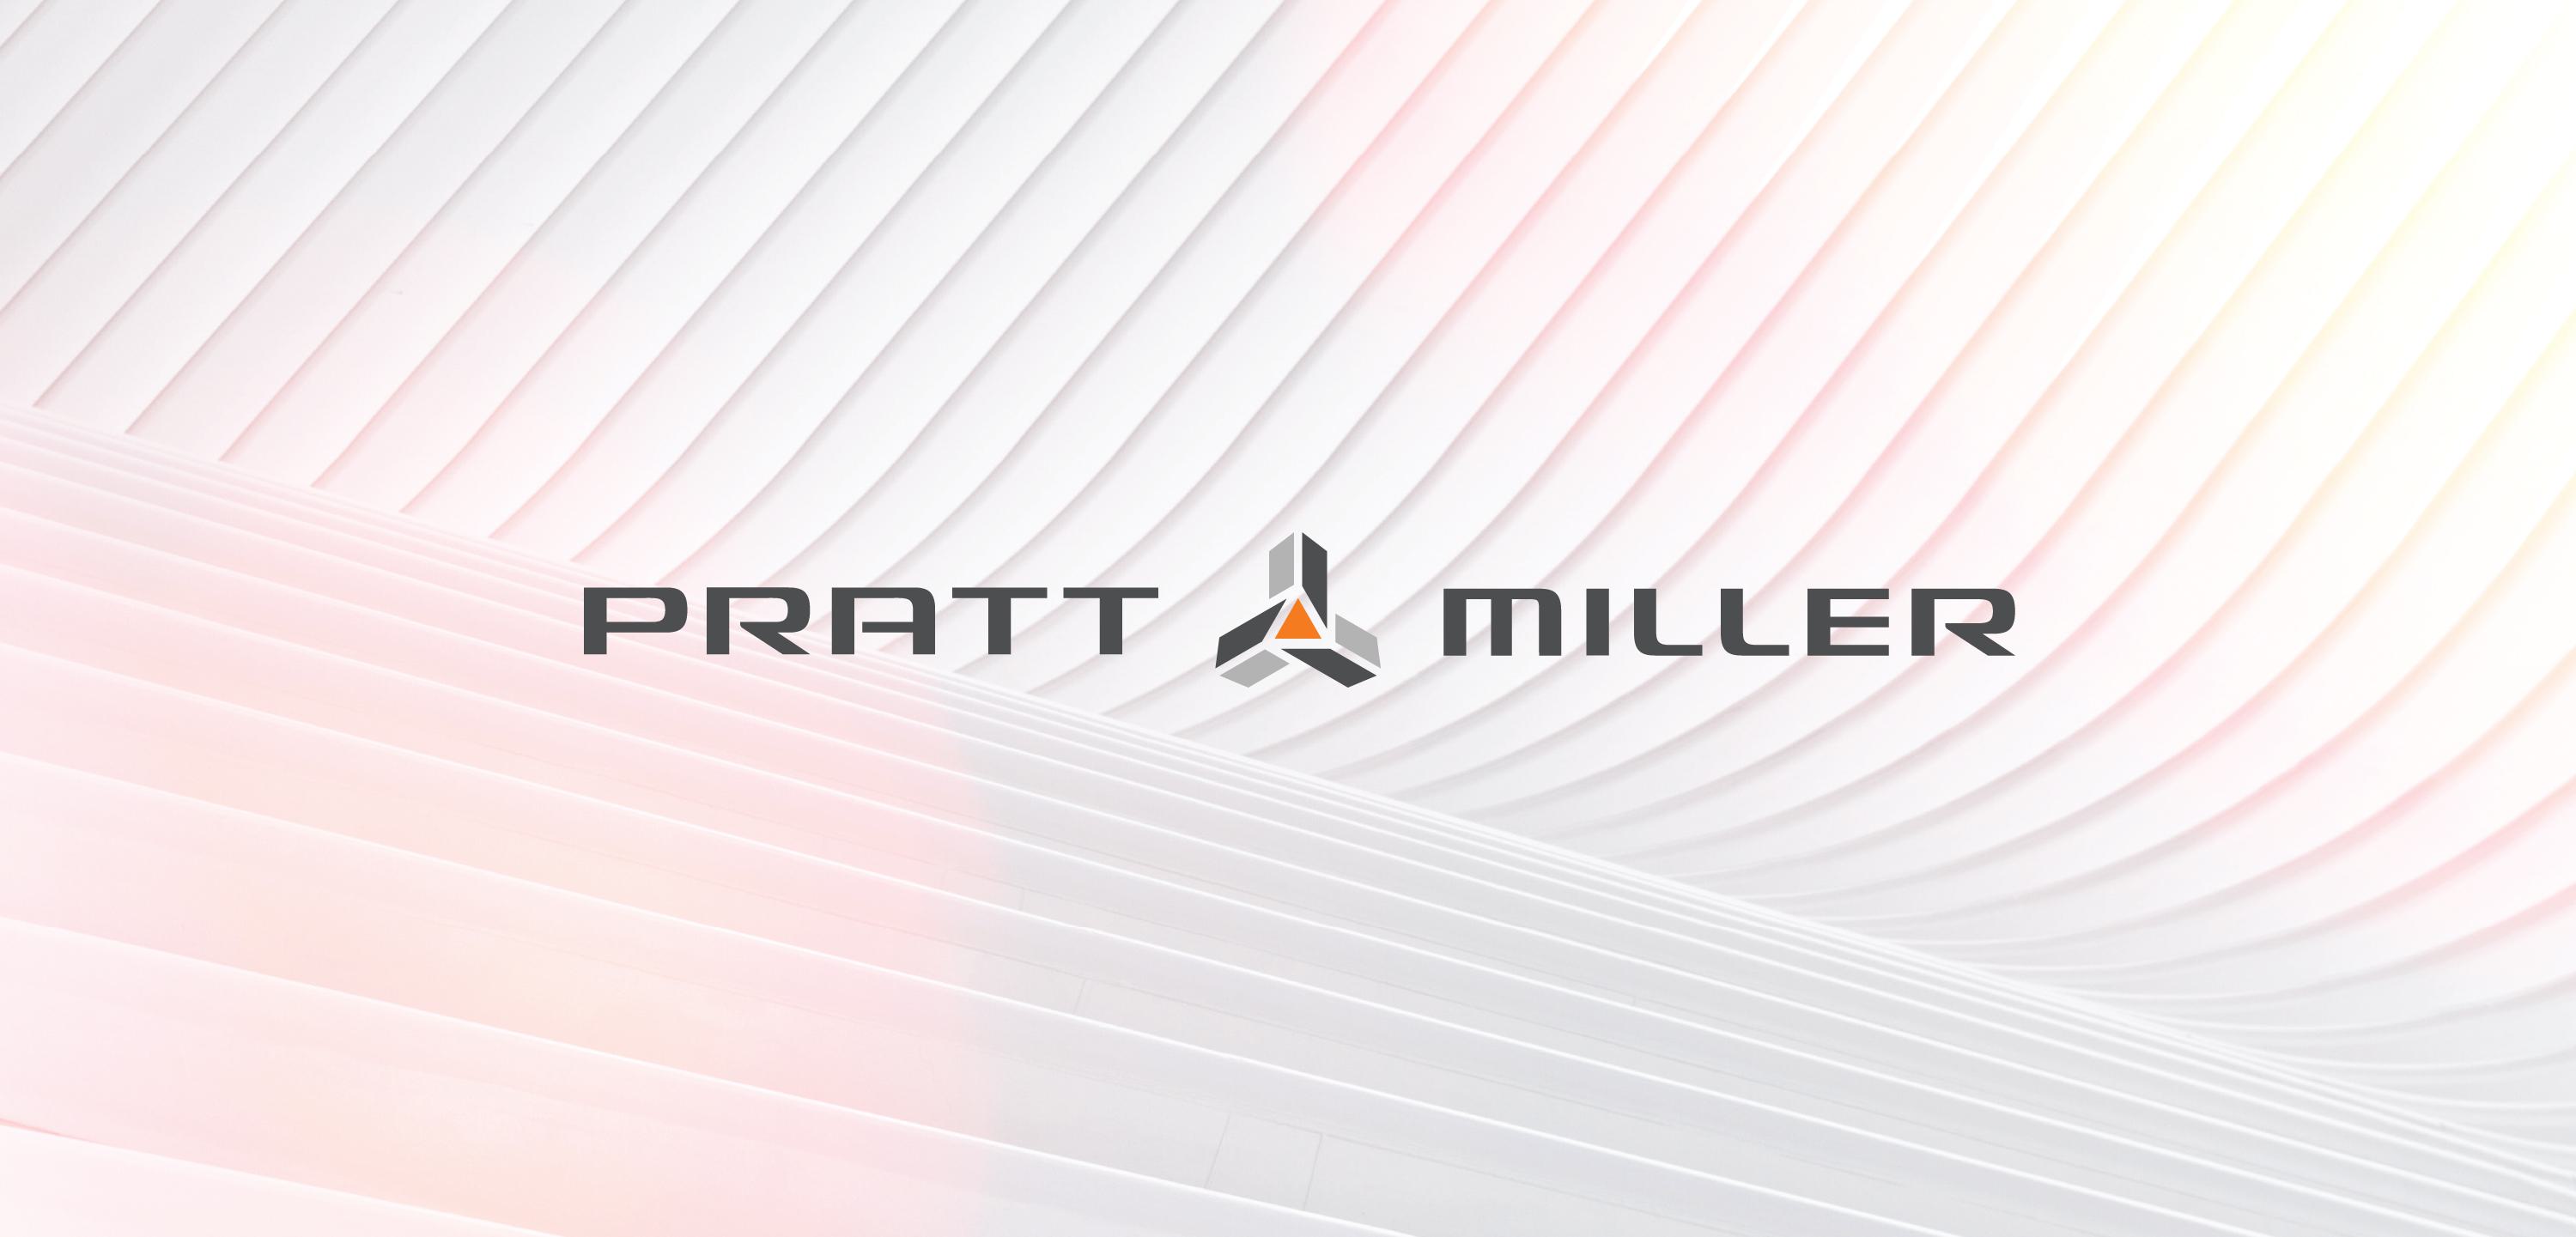 Pratt Miller's new logo against a white textured background.